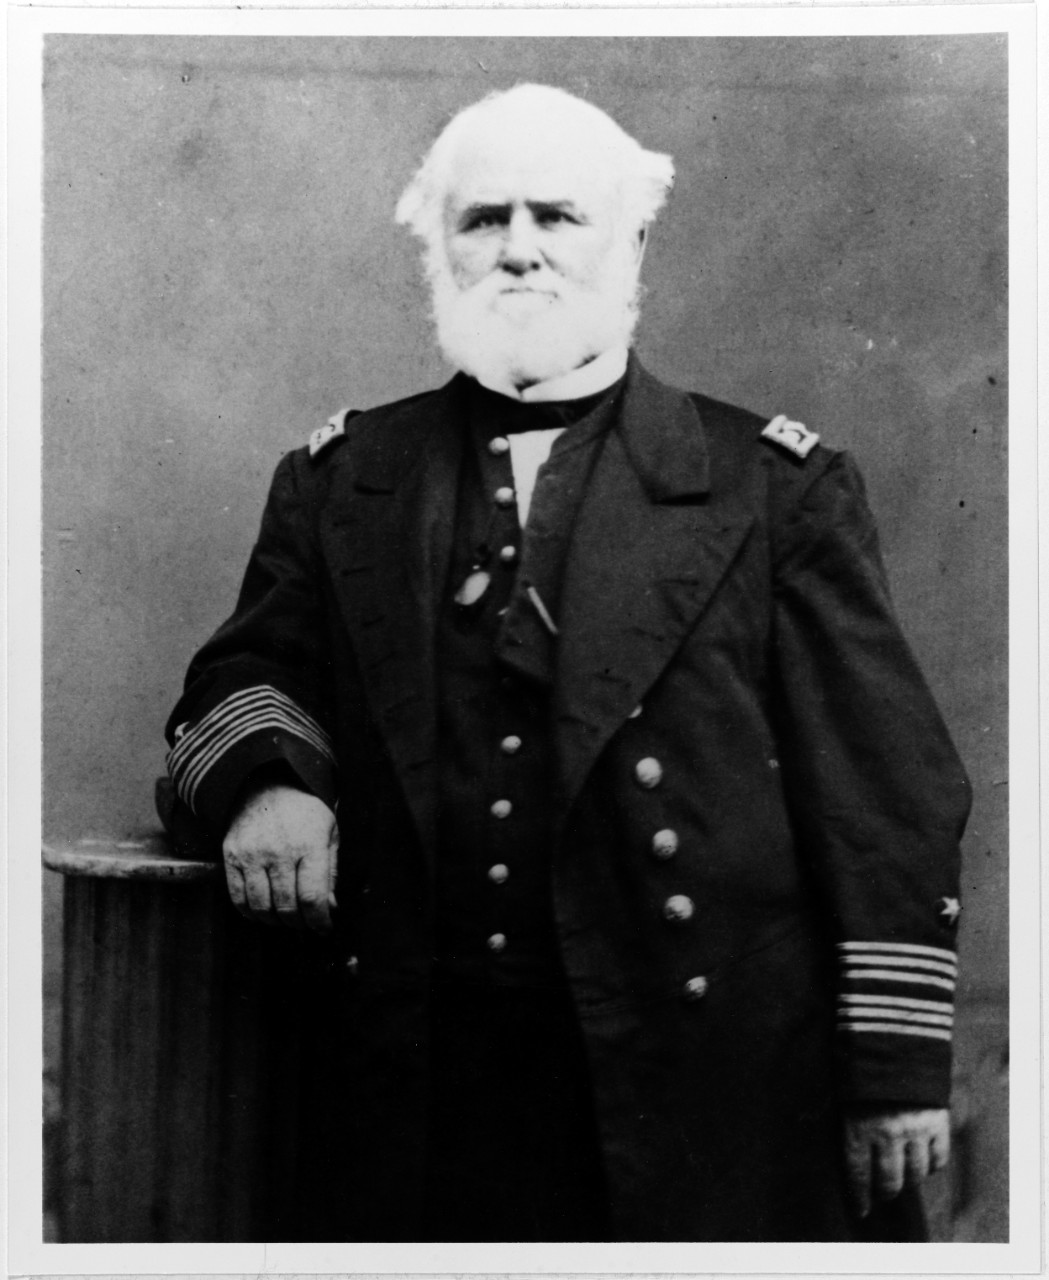 Captain David McDougal, USN